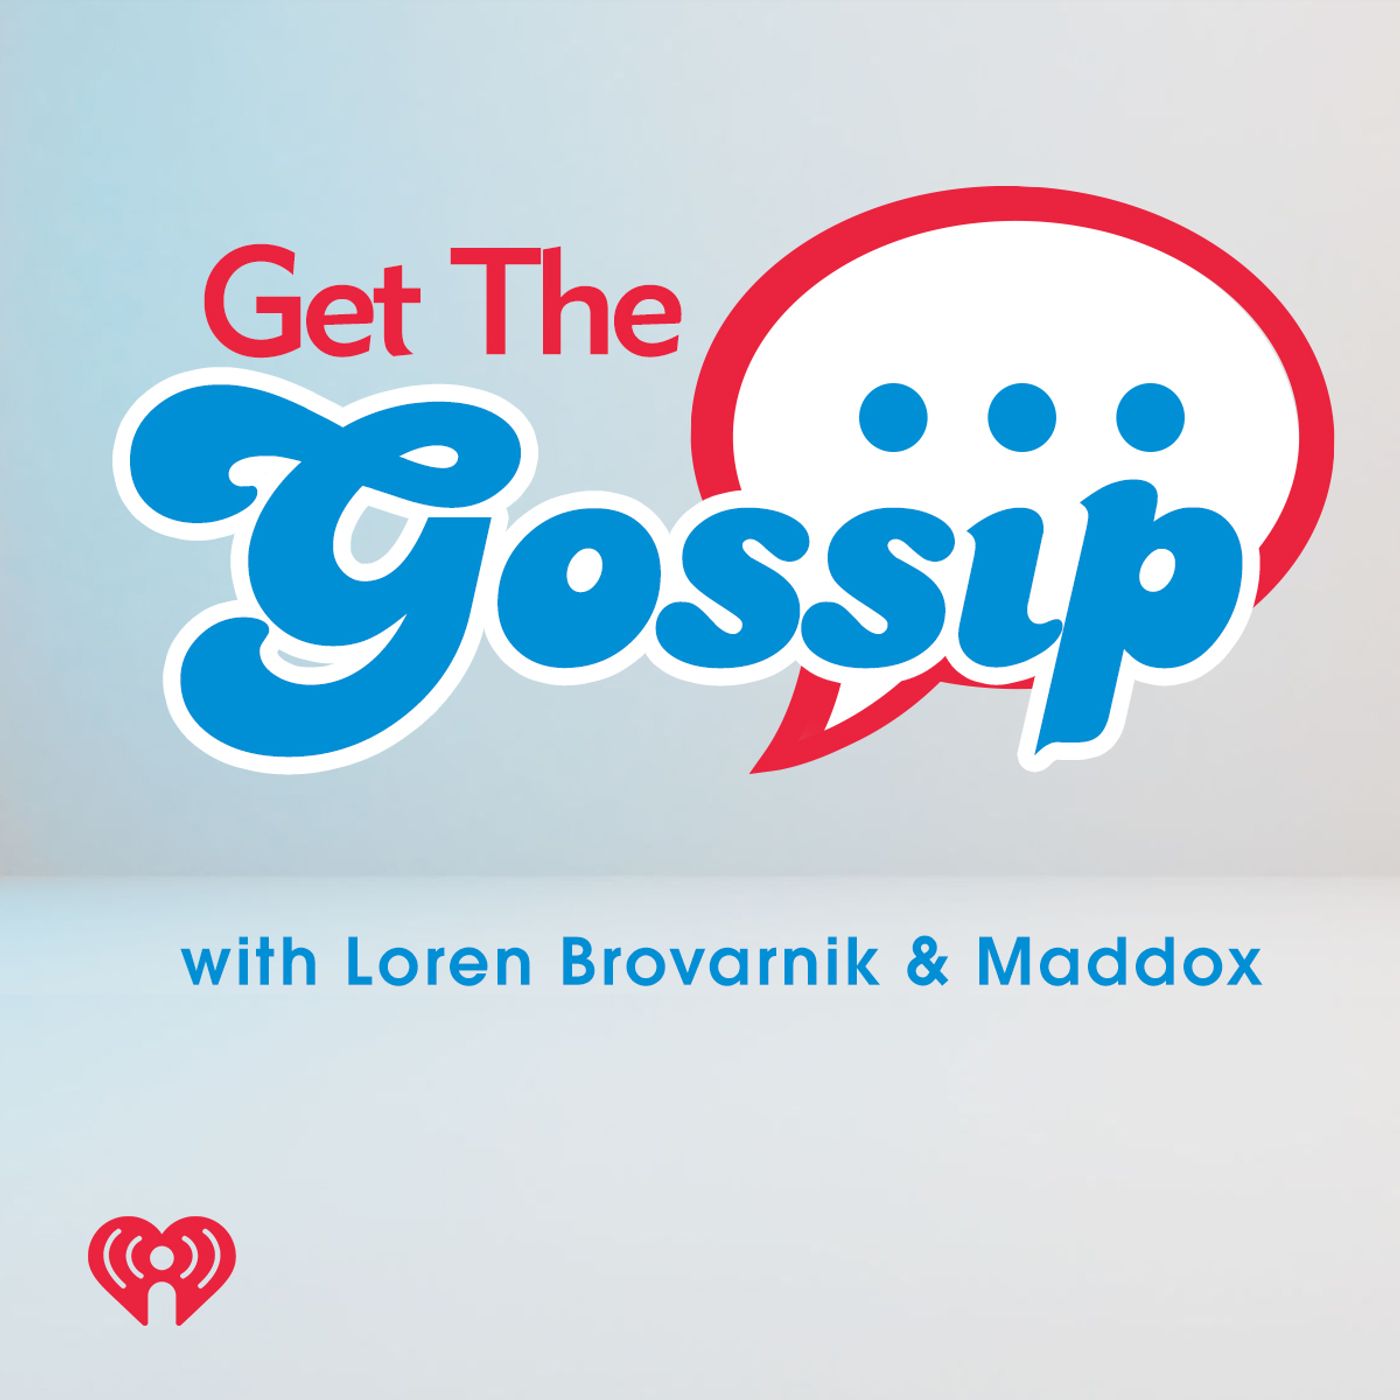 Get The Gossip with Loren & Maddox